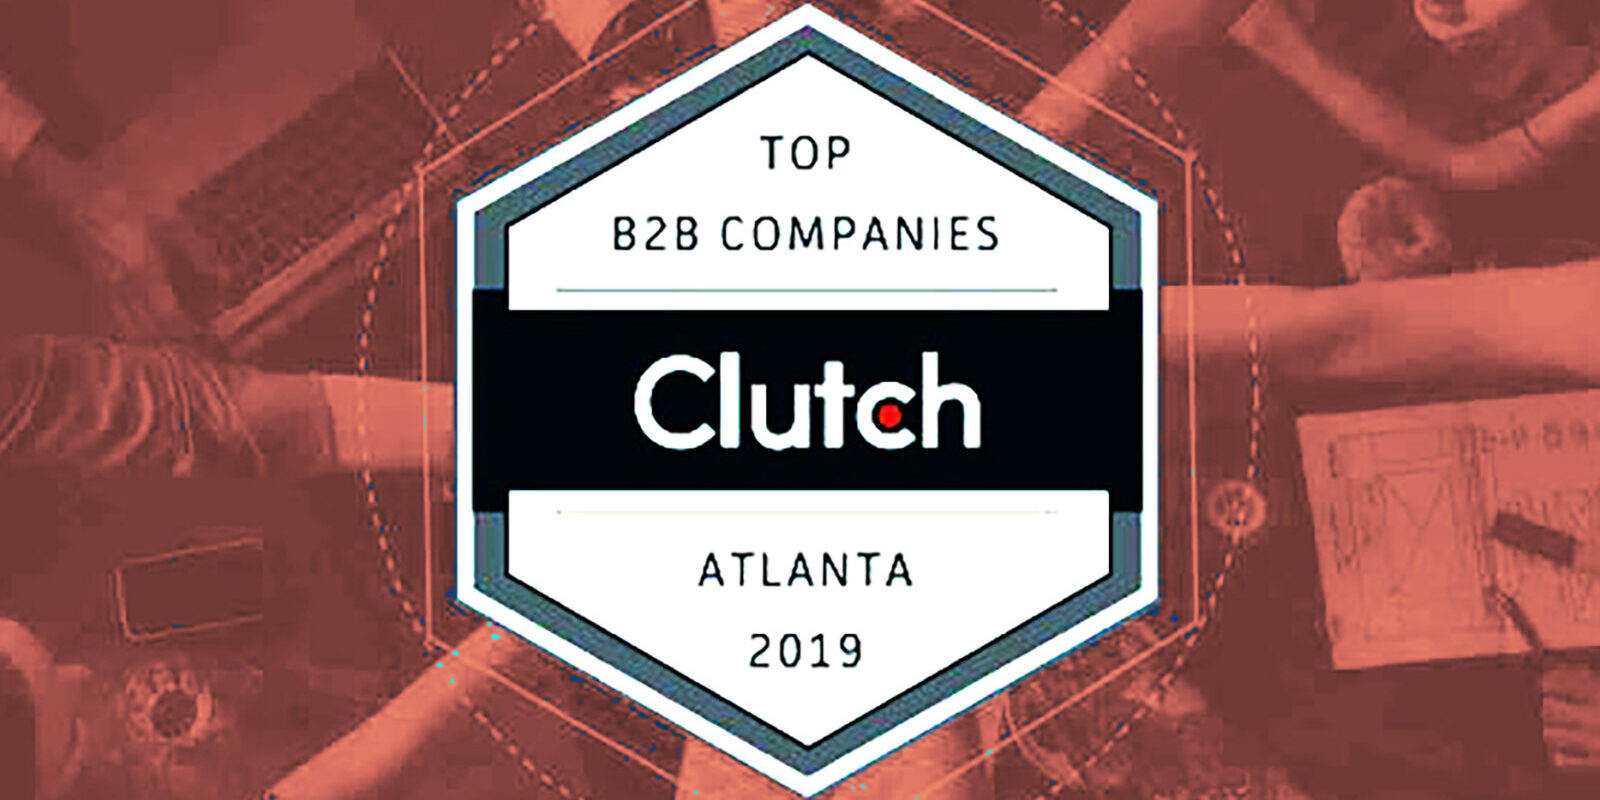 Best-B2B-Company-Atlanta-2019-by-Clutch-og-custom_crop